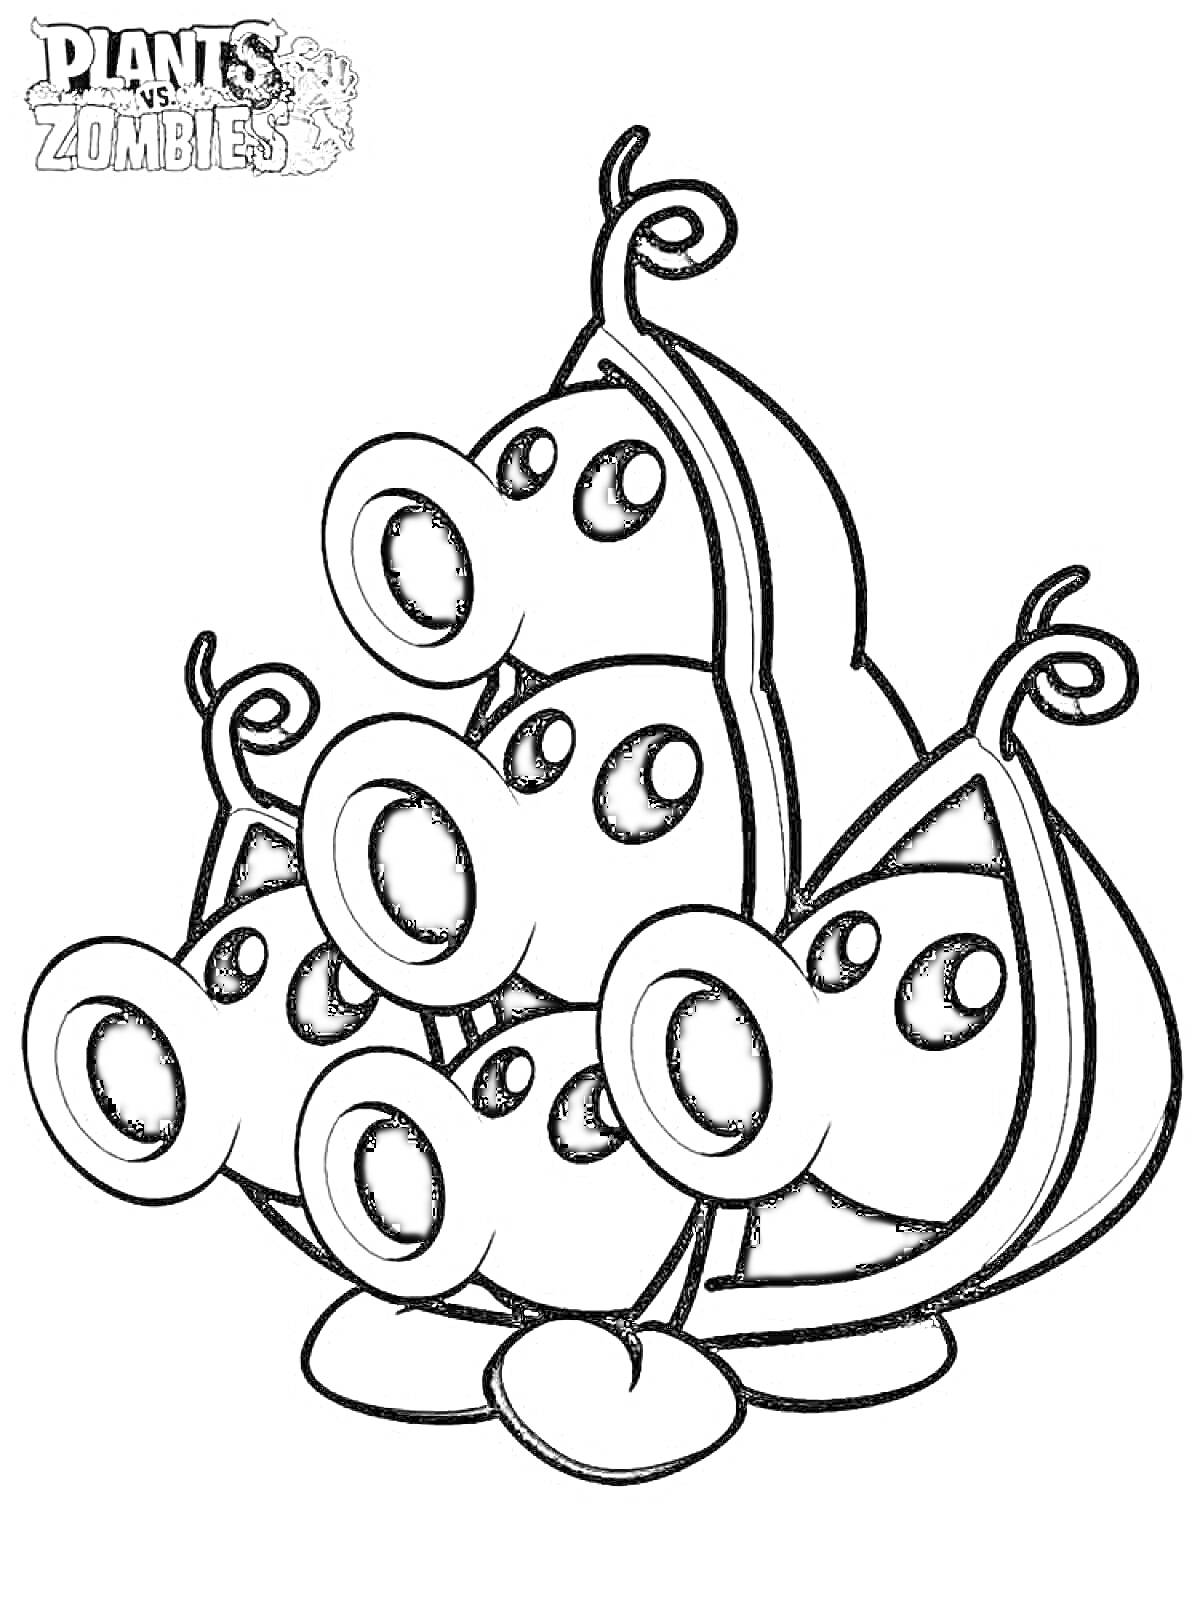 Раскраска Растение с четырьмя головами из игры 